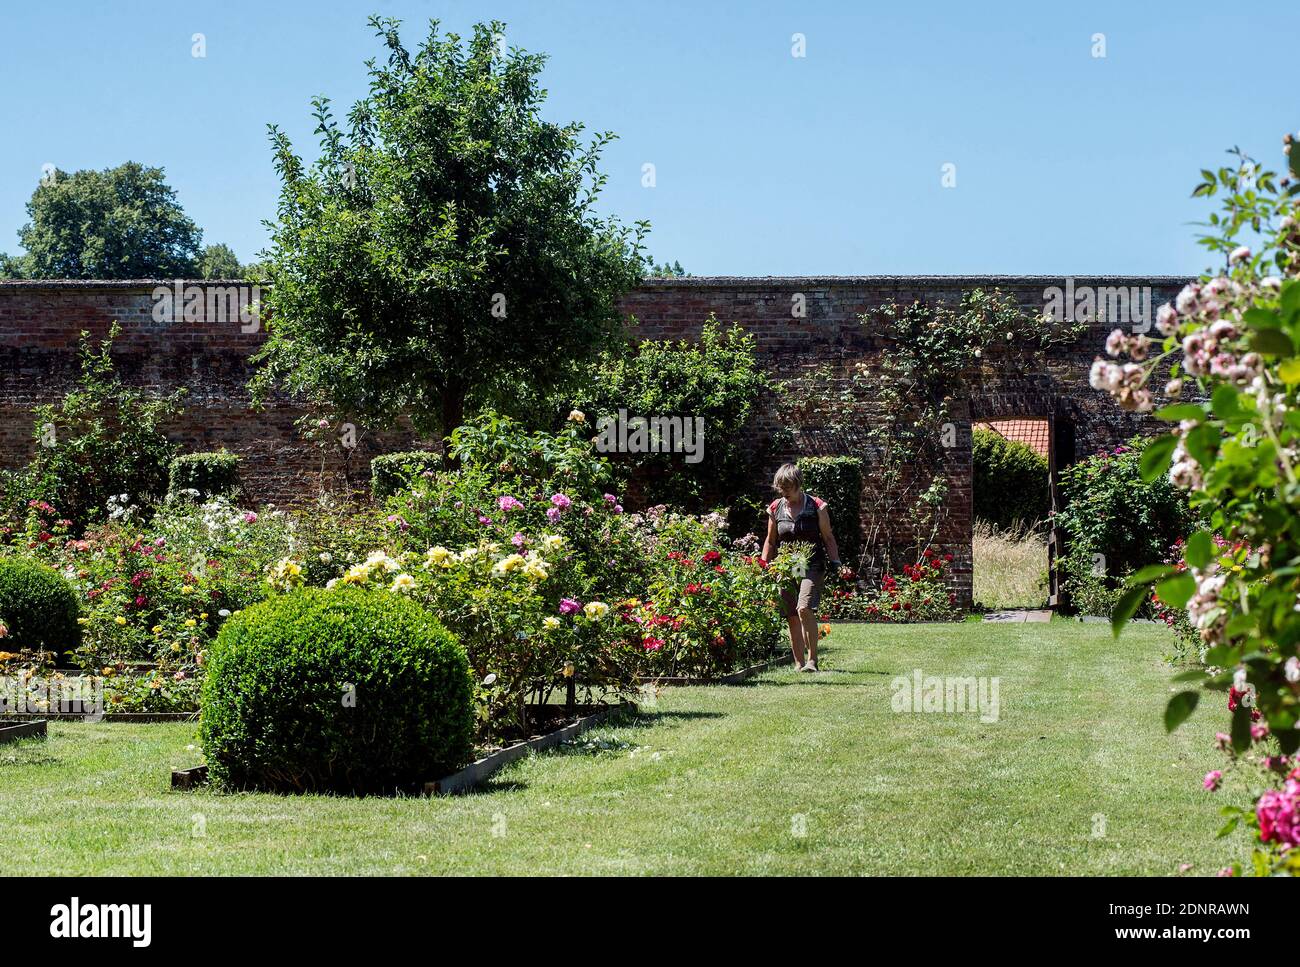 Chateau de Rambures, castello registrato come monumento storico nazionale (francese 'monument historique'). Il giardino delle rose. Foto Stock